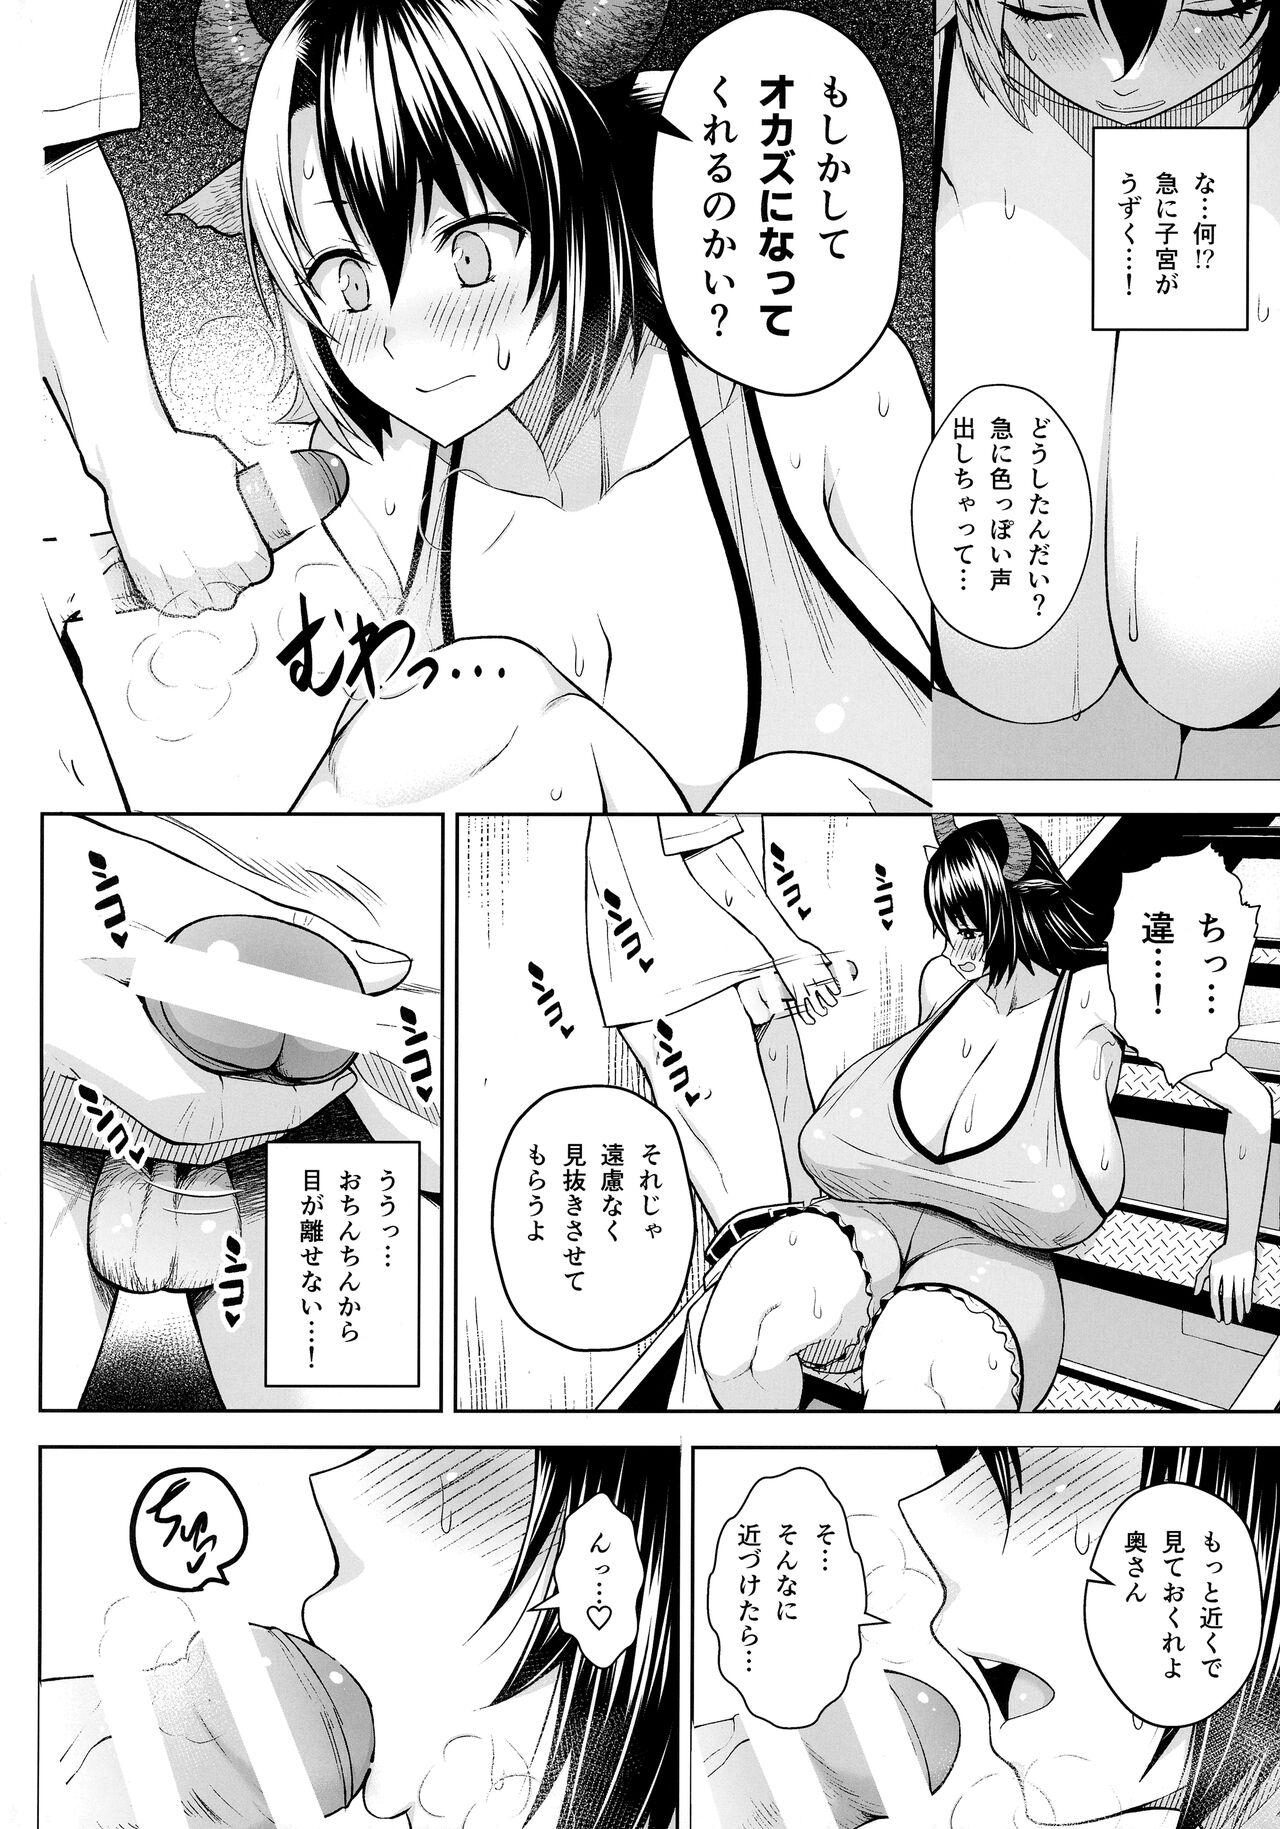 Chacal Oku-san no Oppai ga Dekasugiru noga Warui! 6 - Touhou project Cocksuckers - Page 3